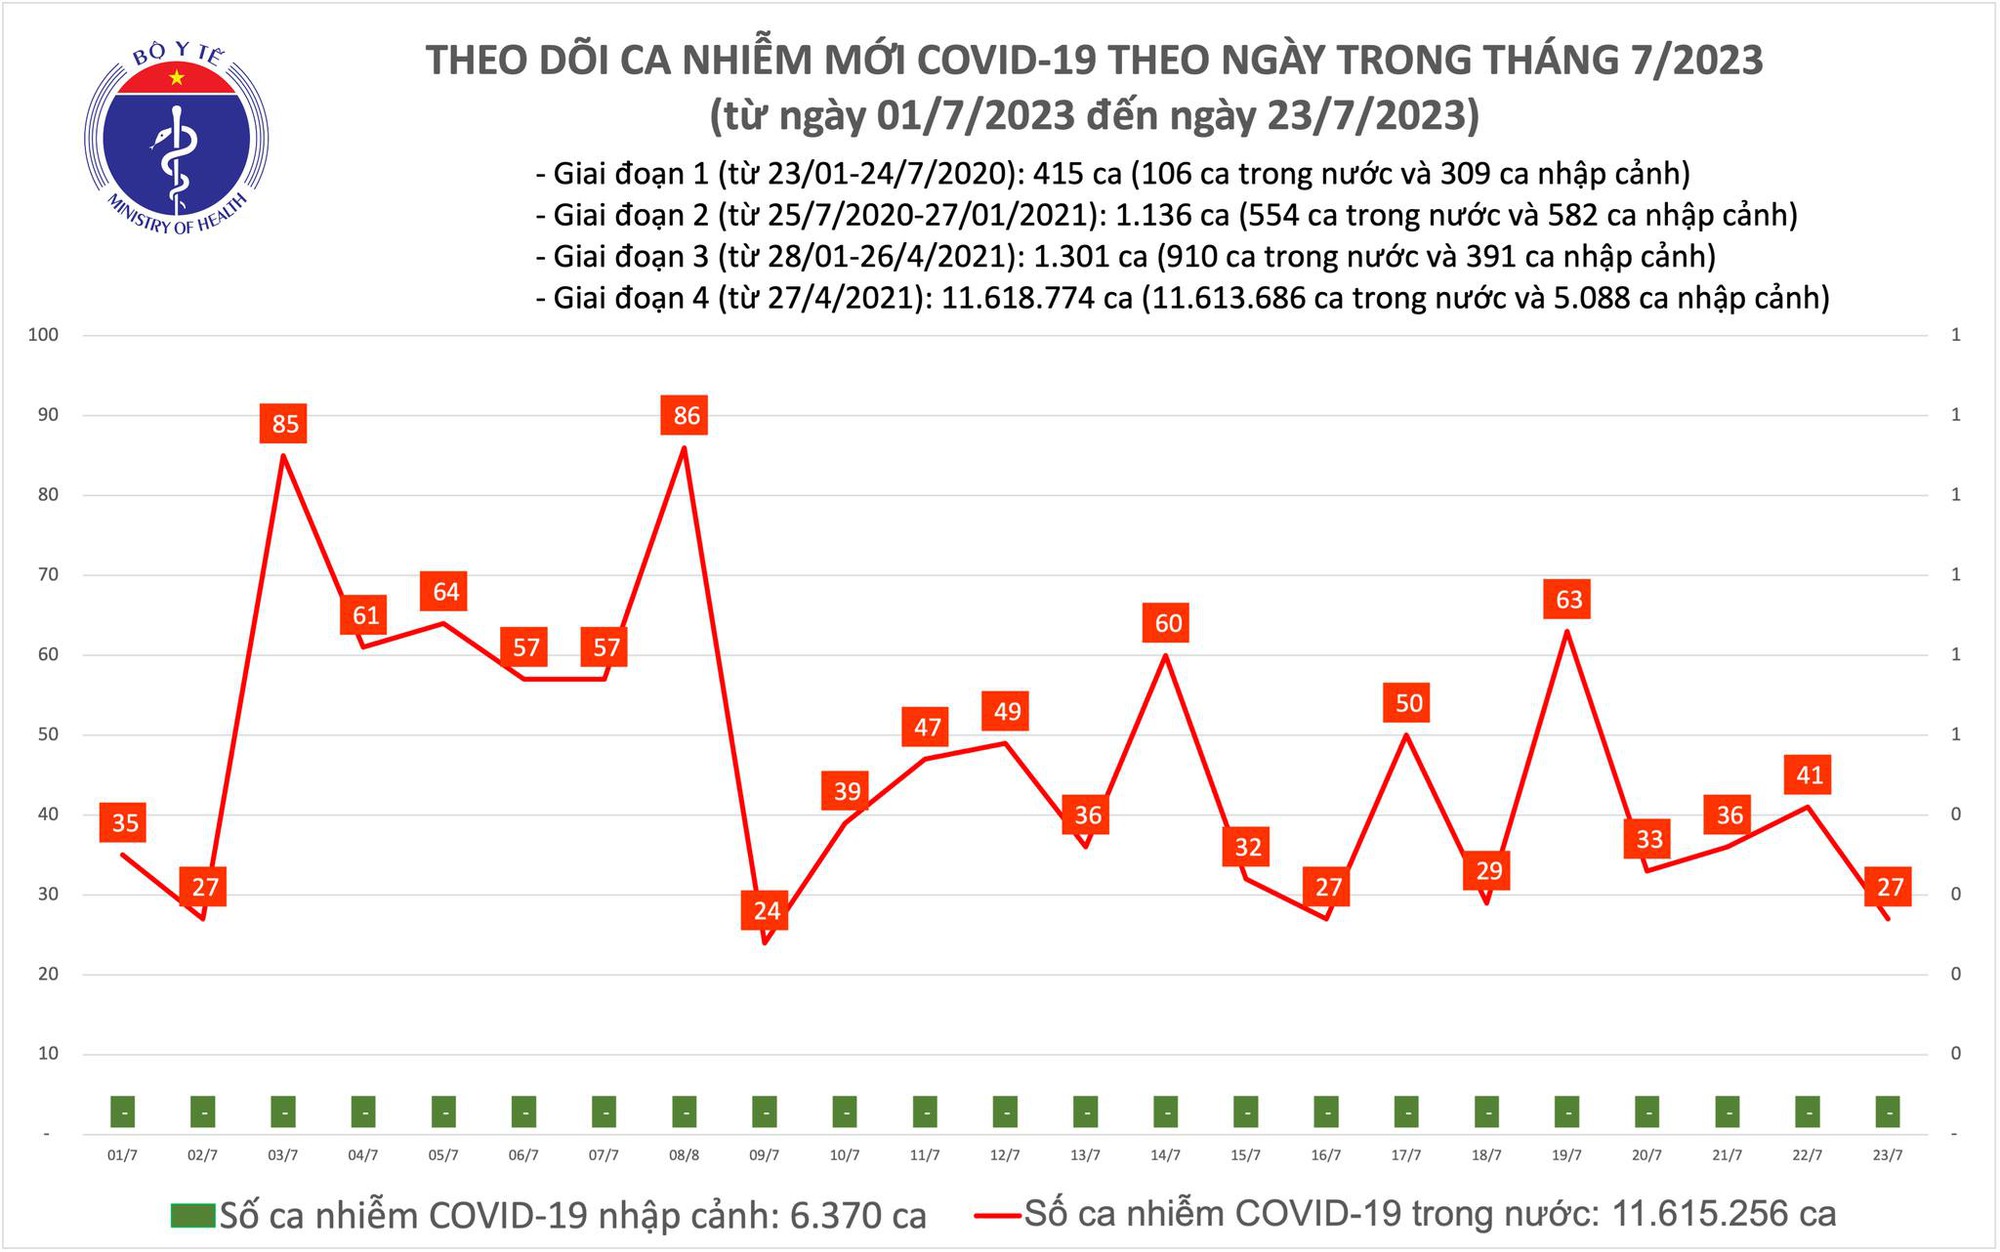 Ngày 23/7: Chỉ có 27 ca COVID-19 mới trong 24h qua - Ảnh 1.